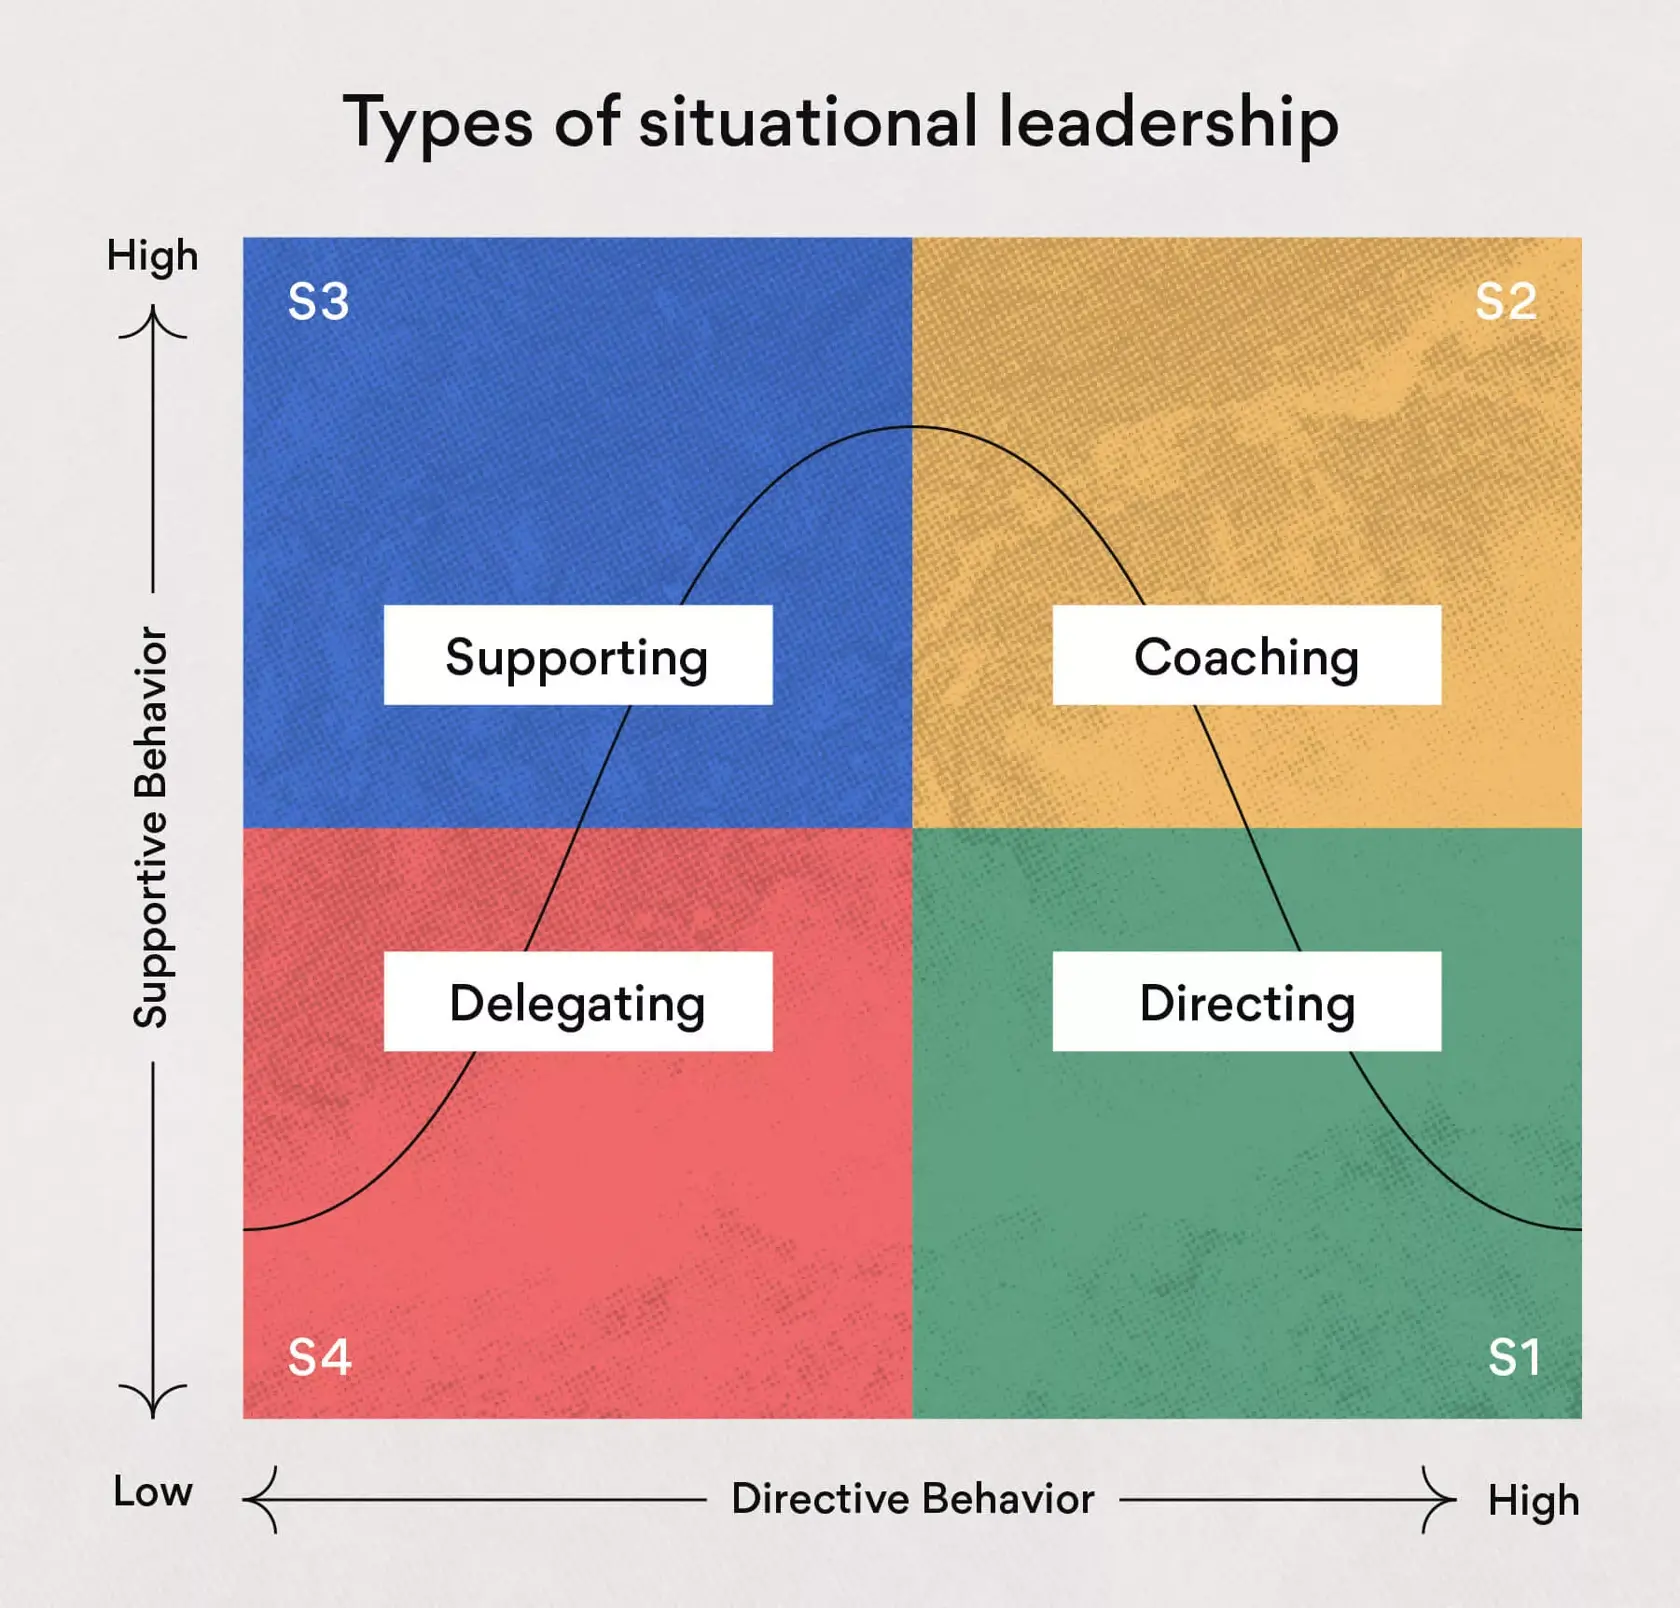 soorten situationele leiderschapsstijlen